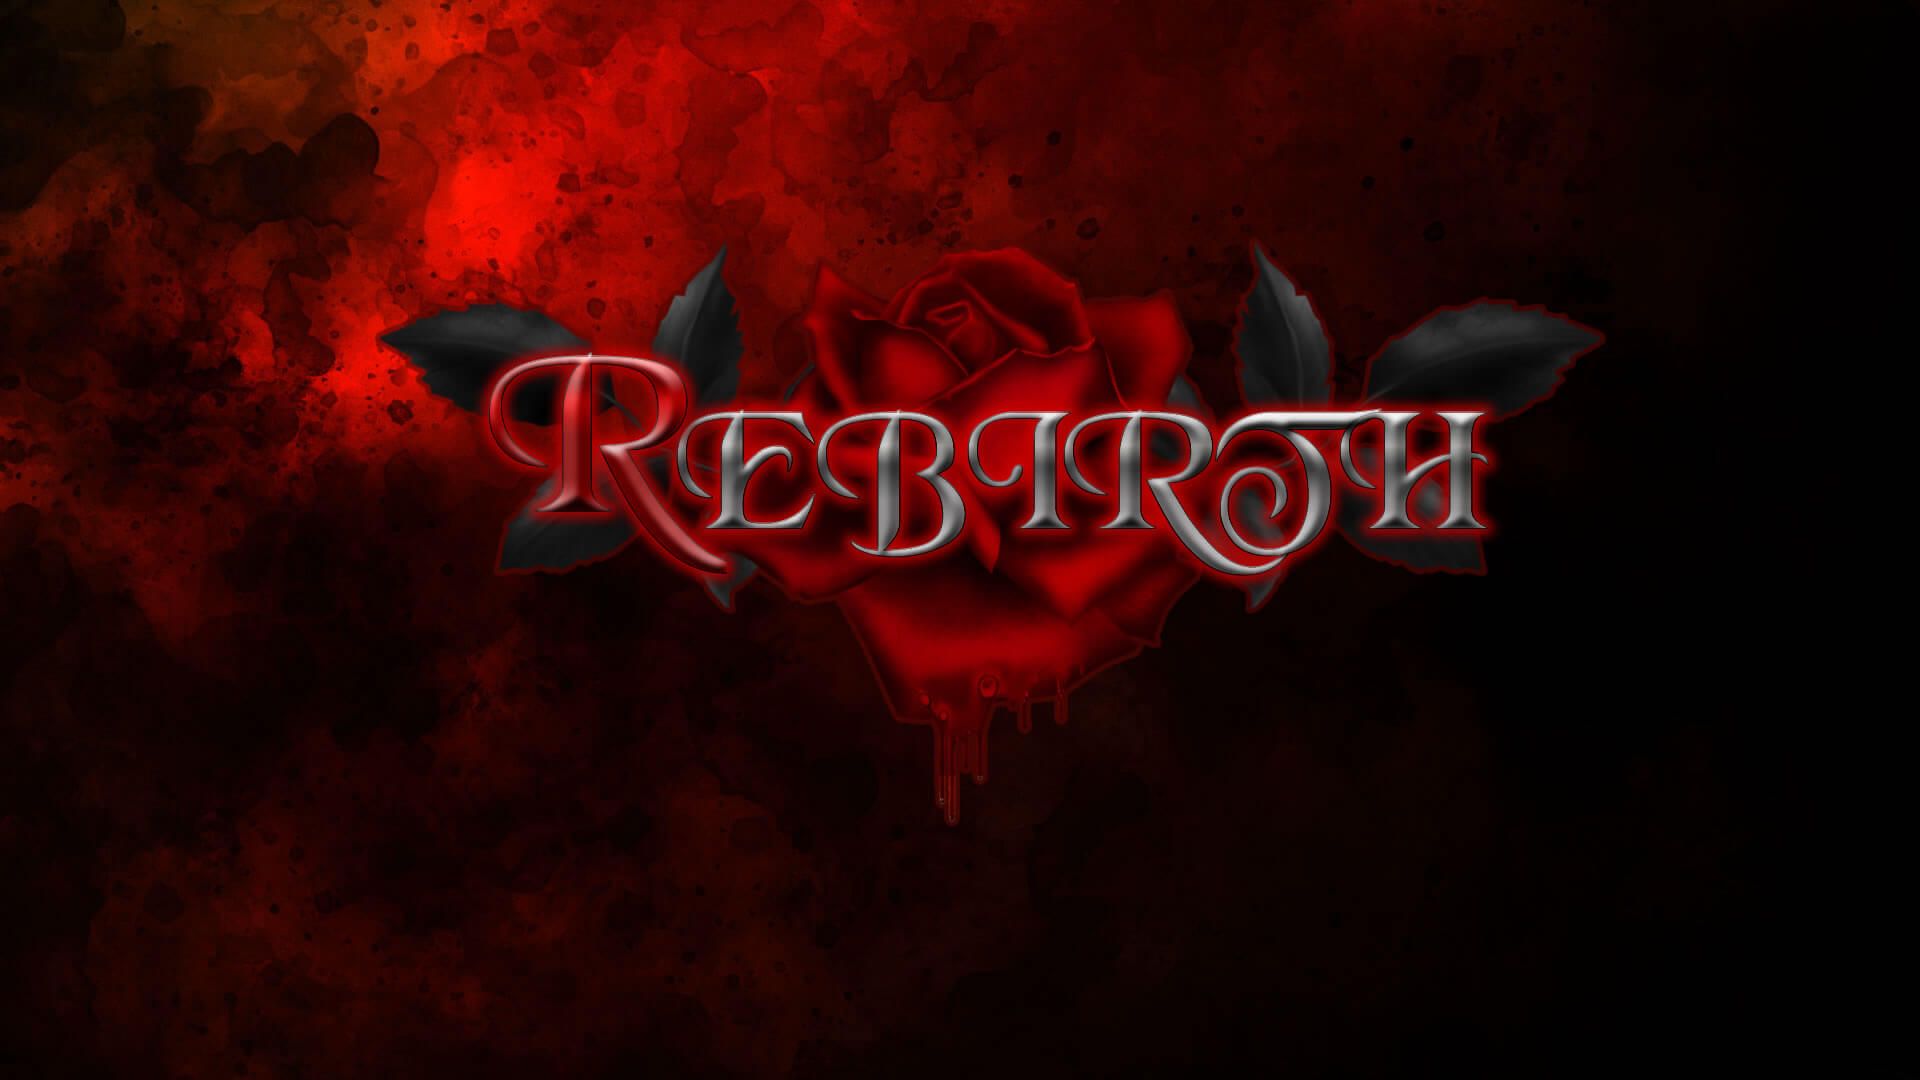 Rebirth [Episode 4 Update 2]